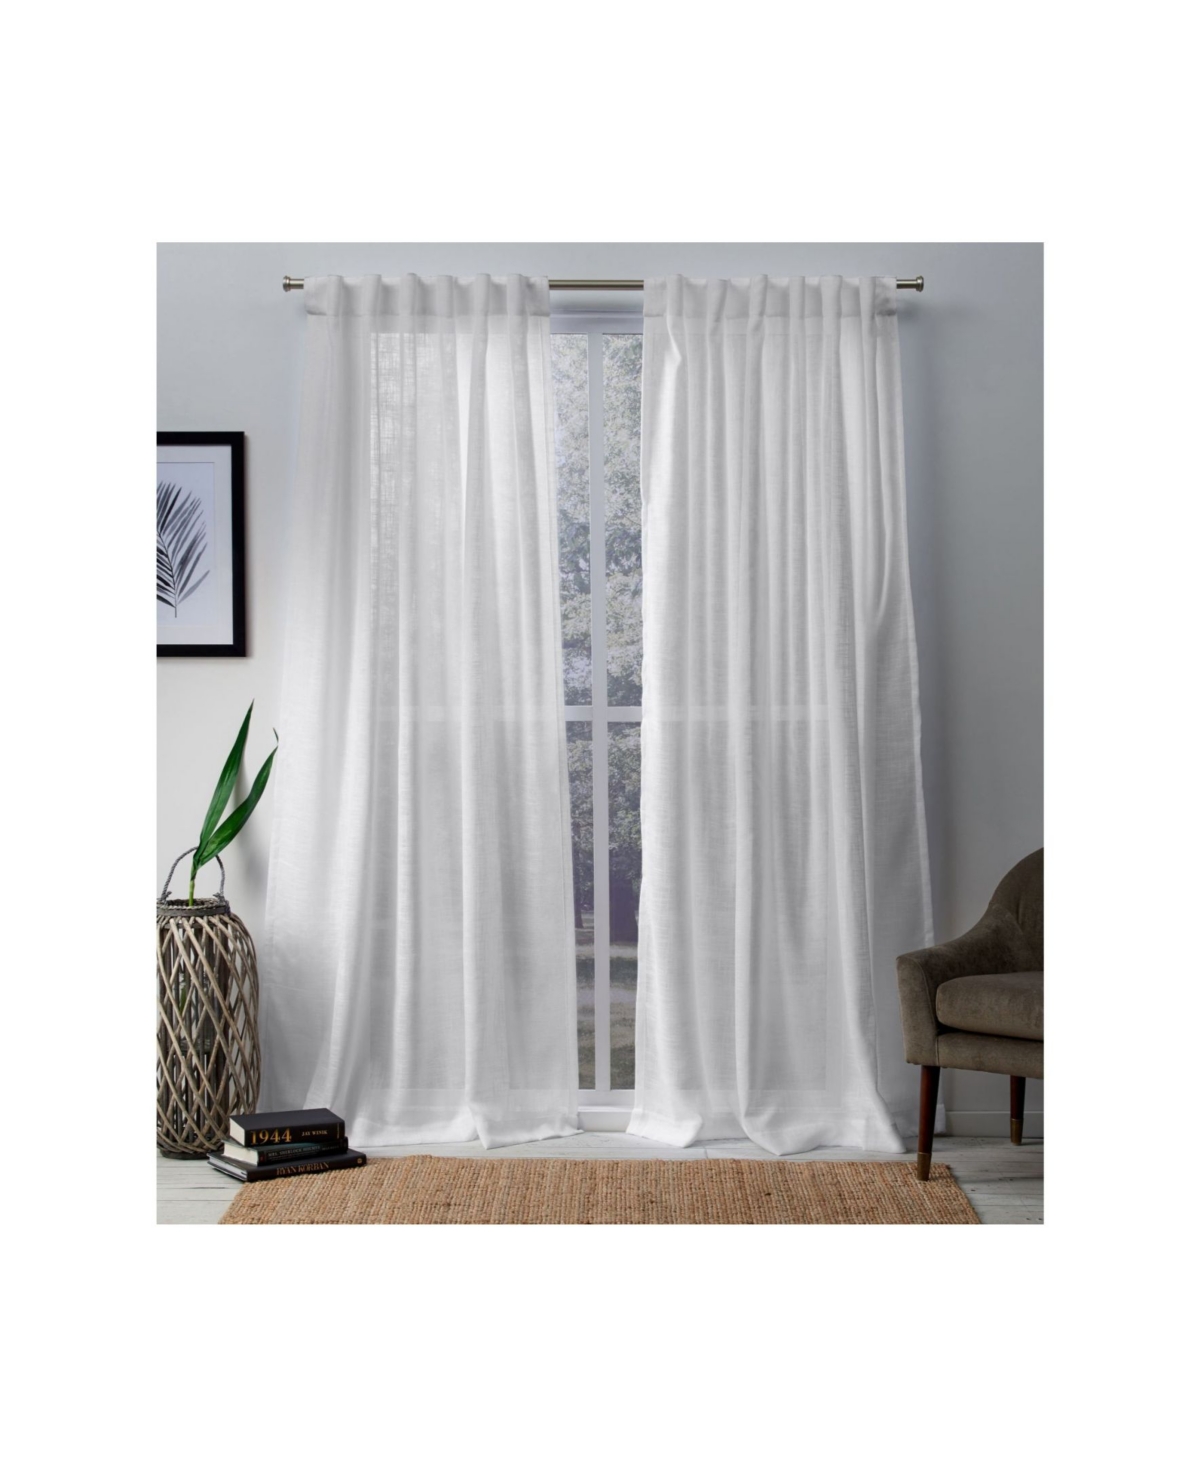 Curtains Bella Sheer Hidden Tab Top Curtain Panel Pair, 54" x 108" - White